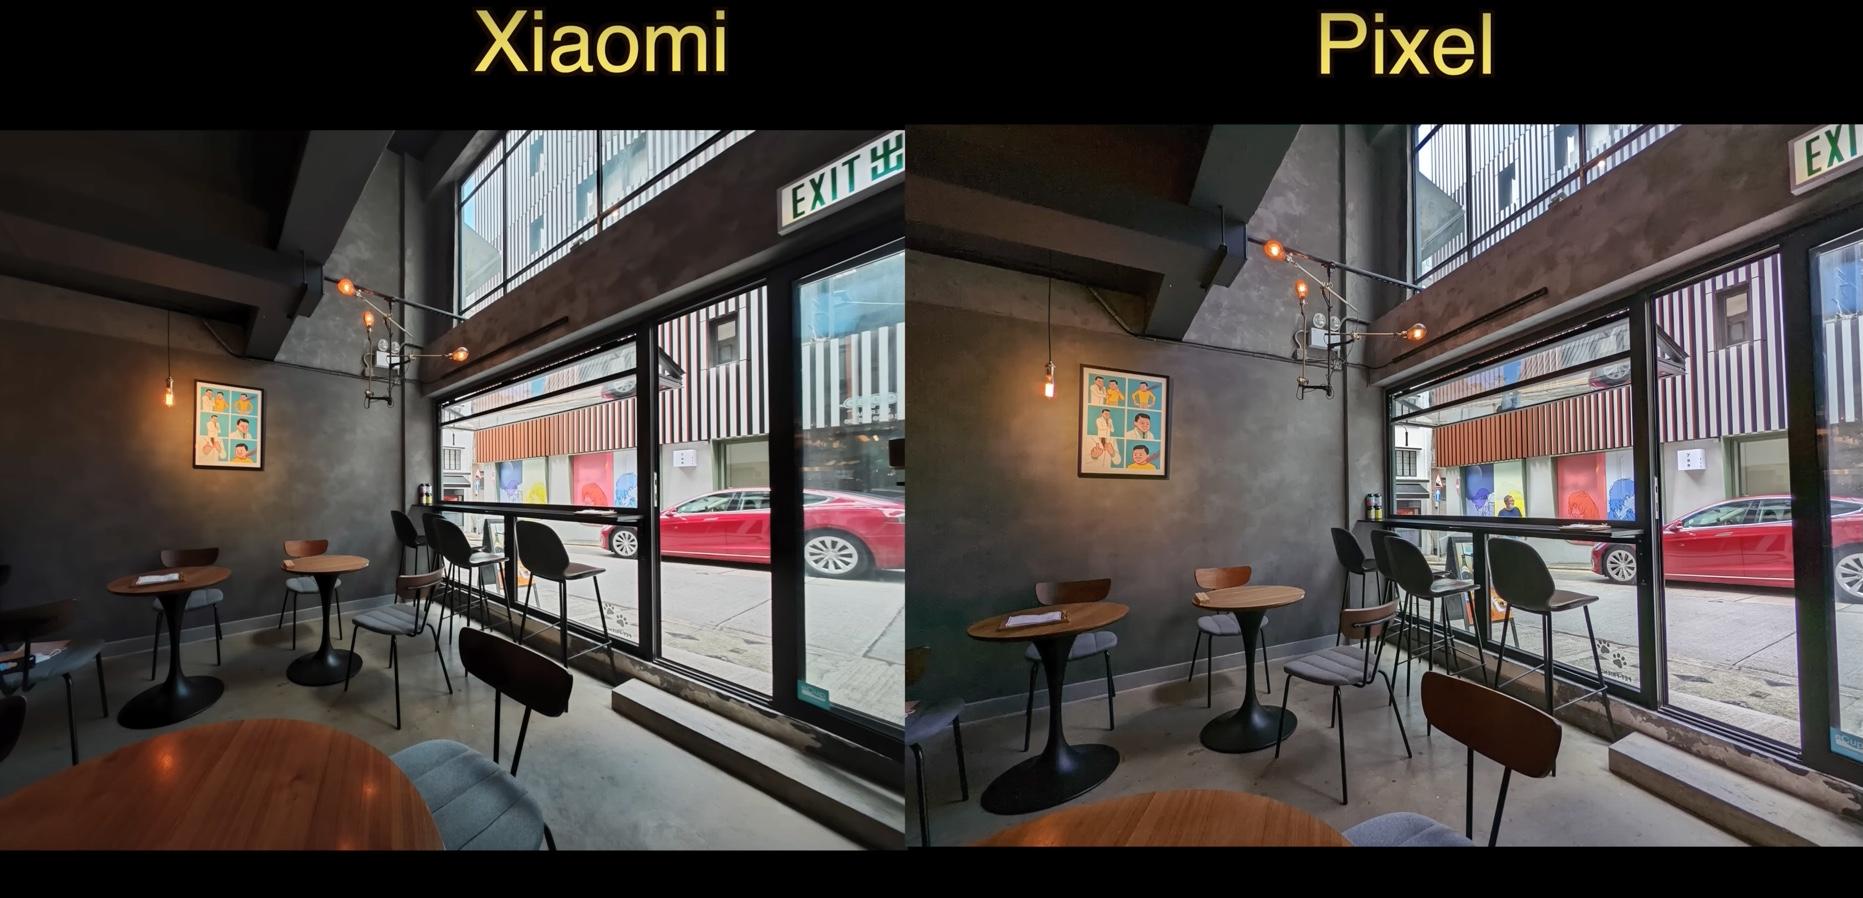 exemples de photos xiaomi vs google 4